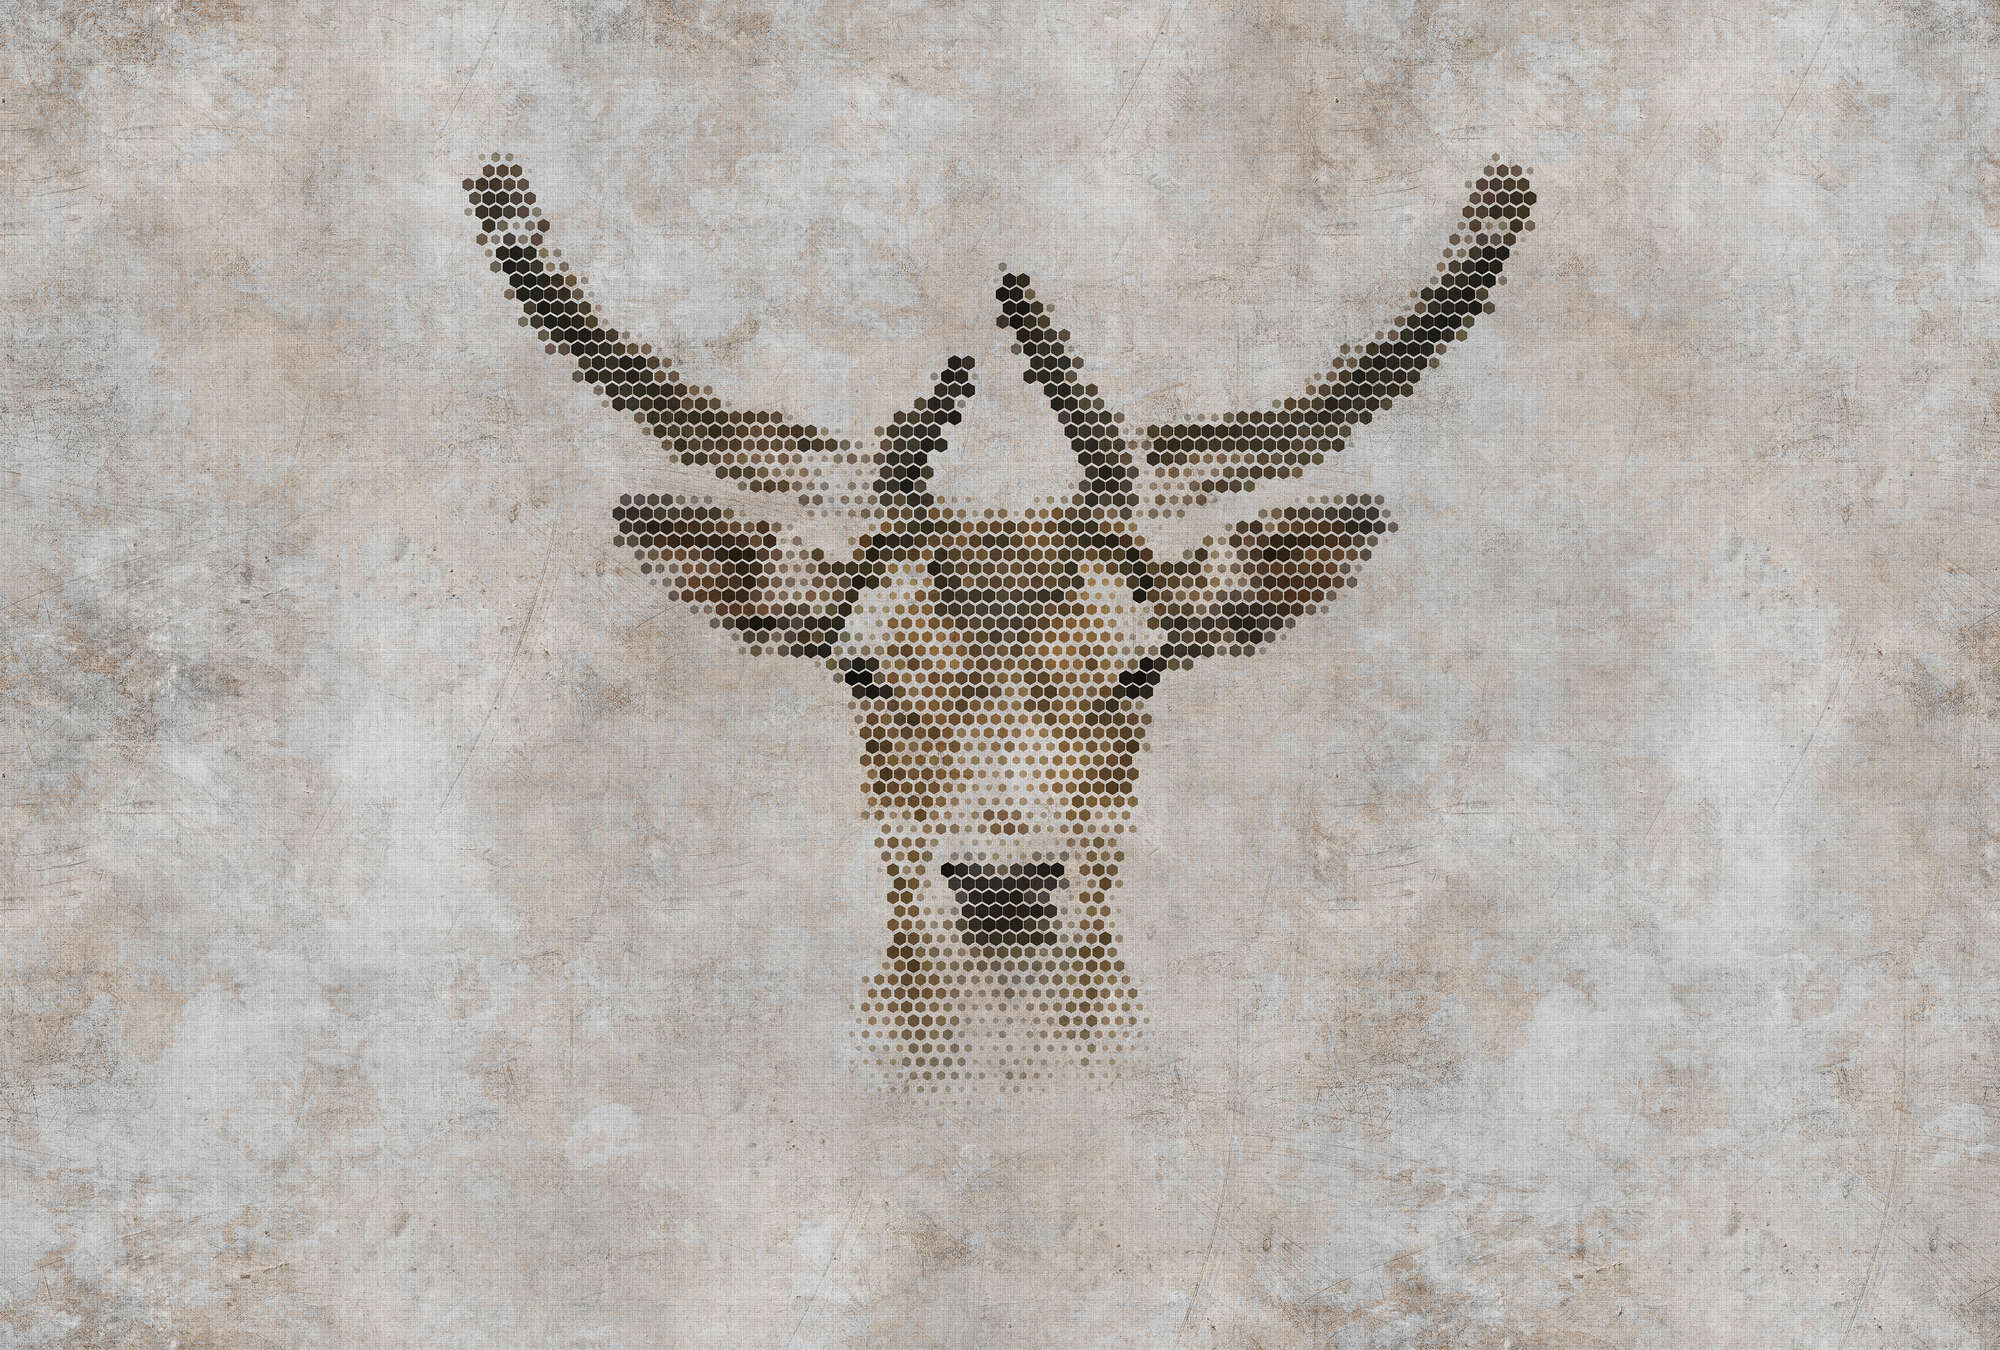             Big three 3 - papel pintado con impresión digital, aspecto concreto con ciervos en estructura de lino natural - beige, marrón | nácar liso
        